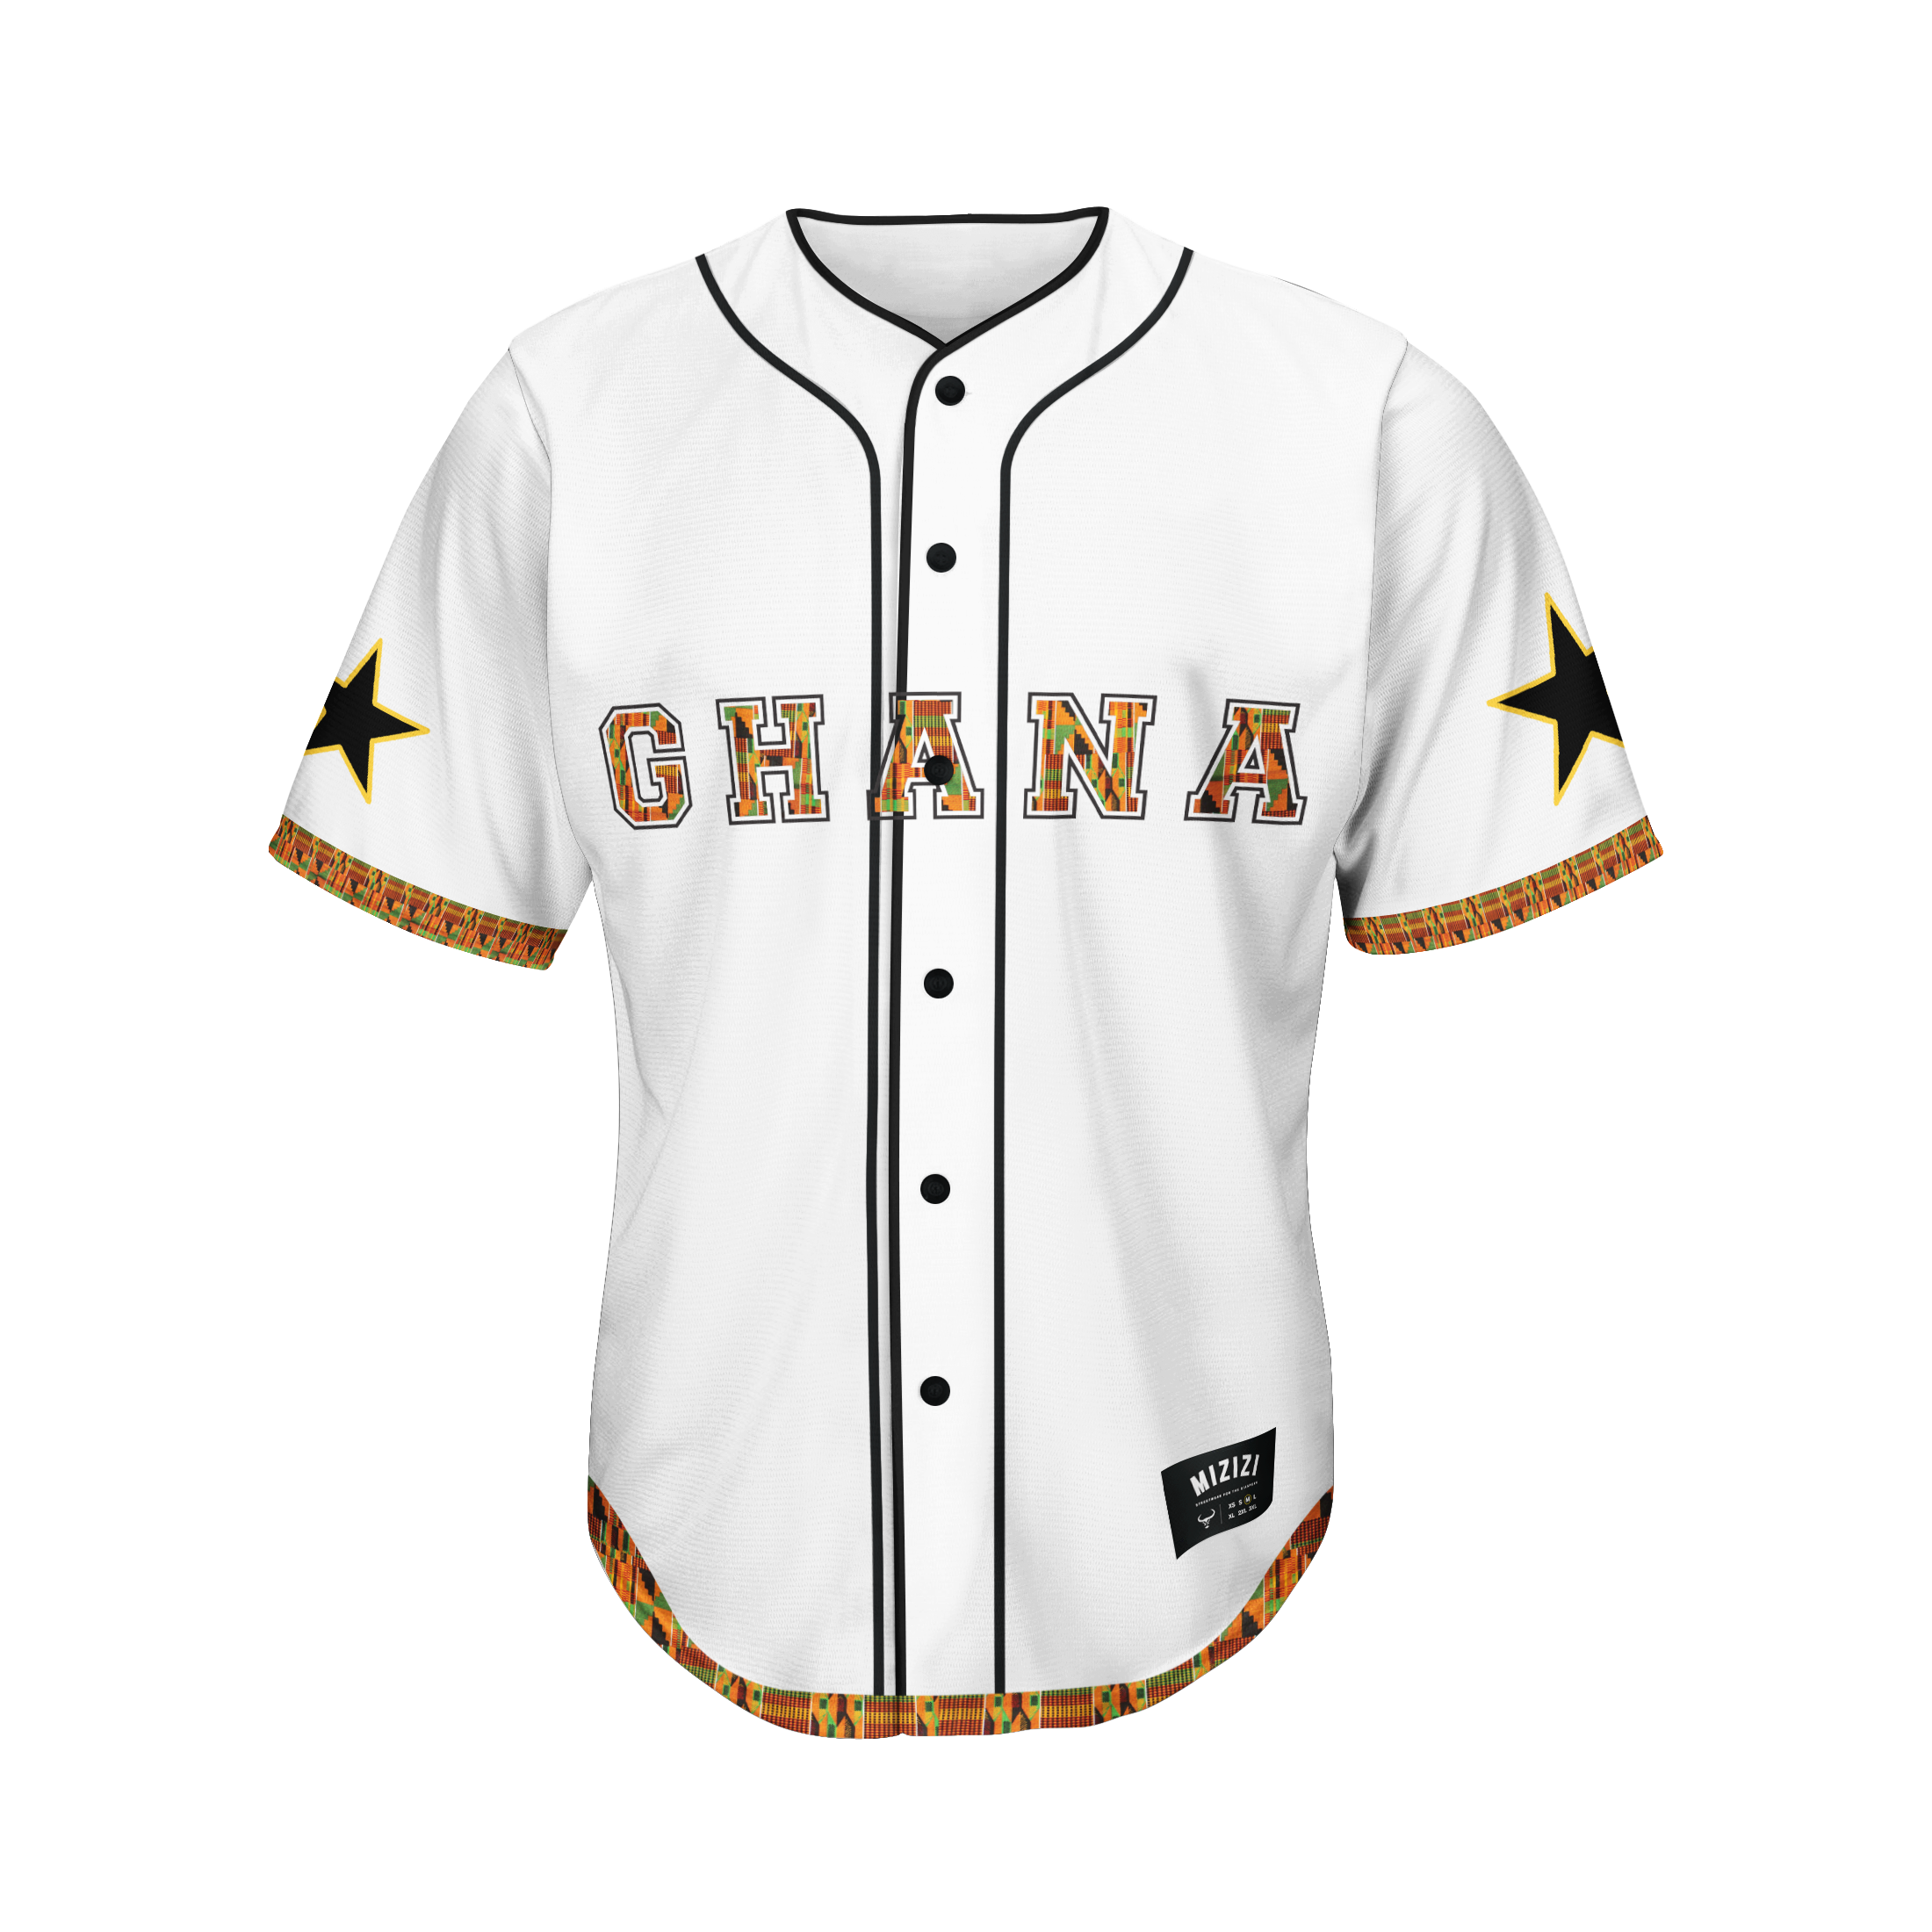 Size 4XL MLB Fan Jerseys for sale